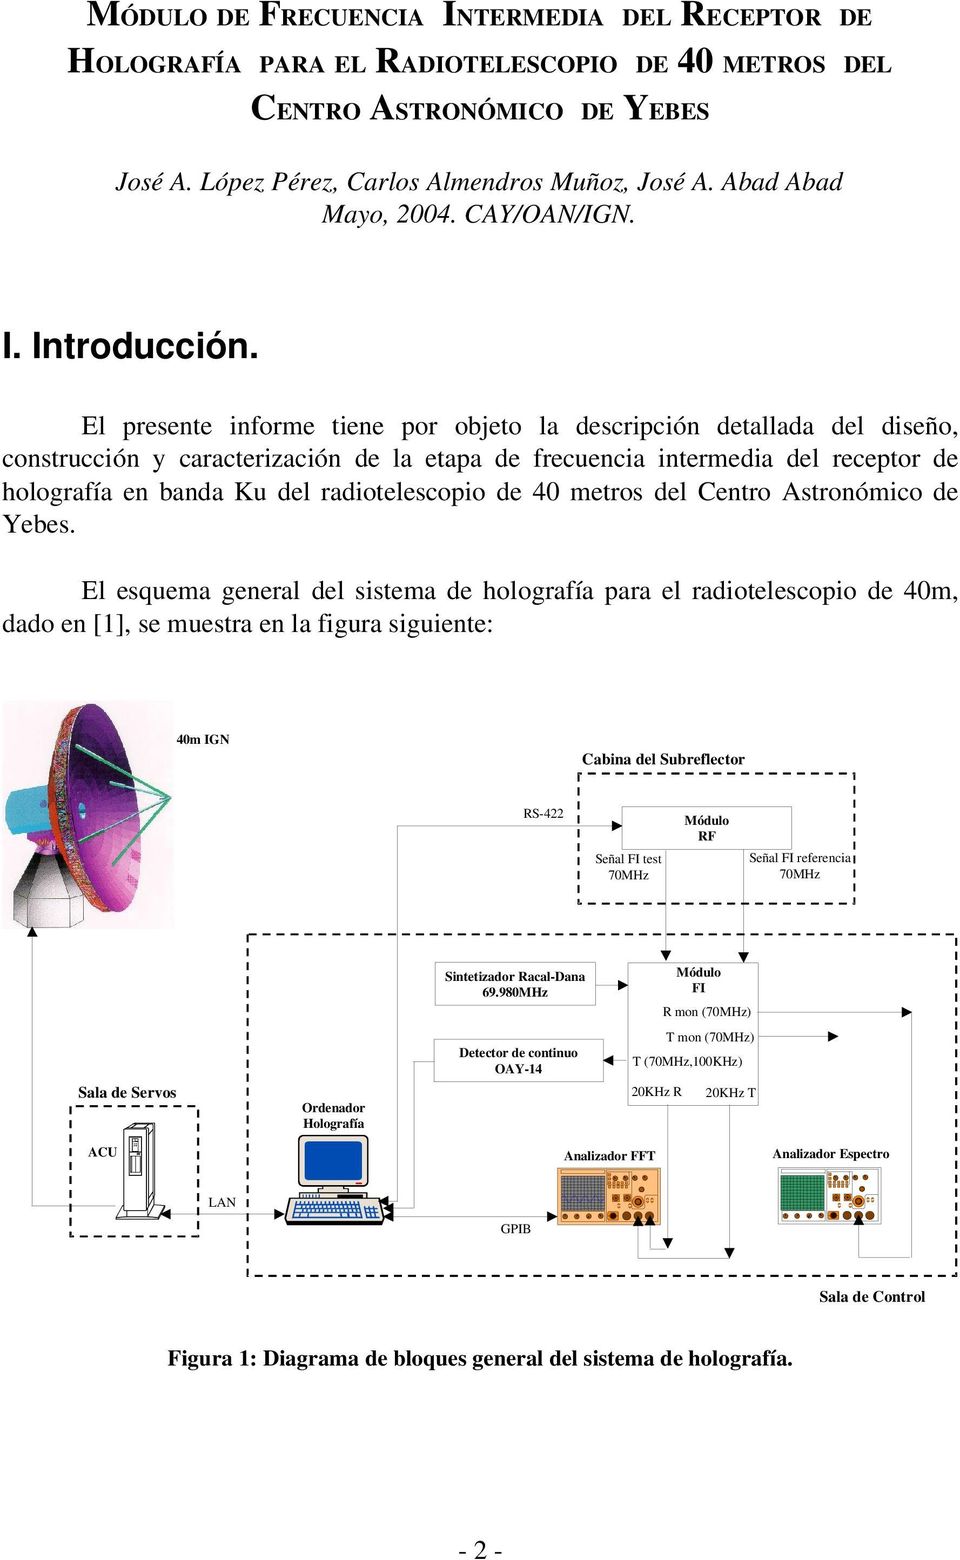 El presente informe tiene por objeto la descripción detallada del diseño, construcción y caracterización de la etapa de frecuencia intermedia del receptor de holografía en banda Ku del